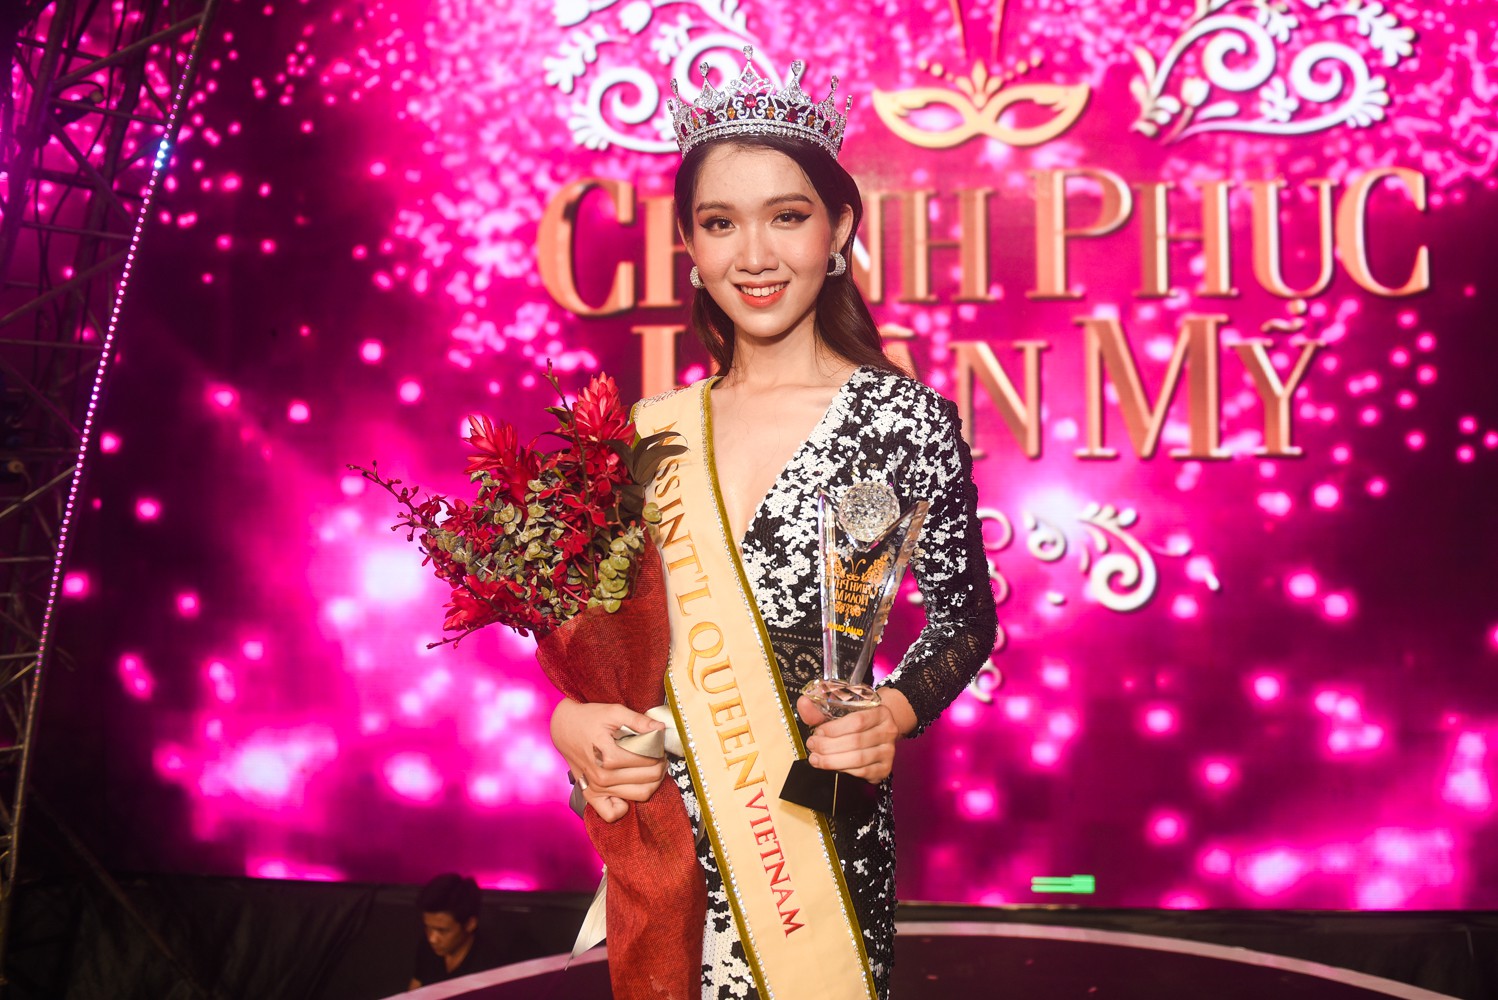 Chiêm ngưỡng nhan sắc ngọt ngào của cô gái kế vị Hương Giang đi thi Hoa hậu Chuyển giới Quốc tế 2019 - Ảnh 1.